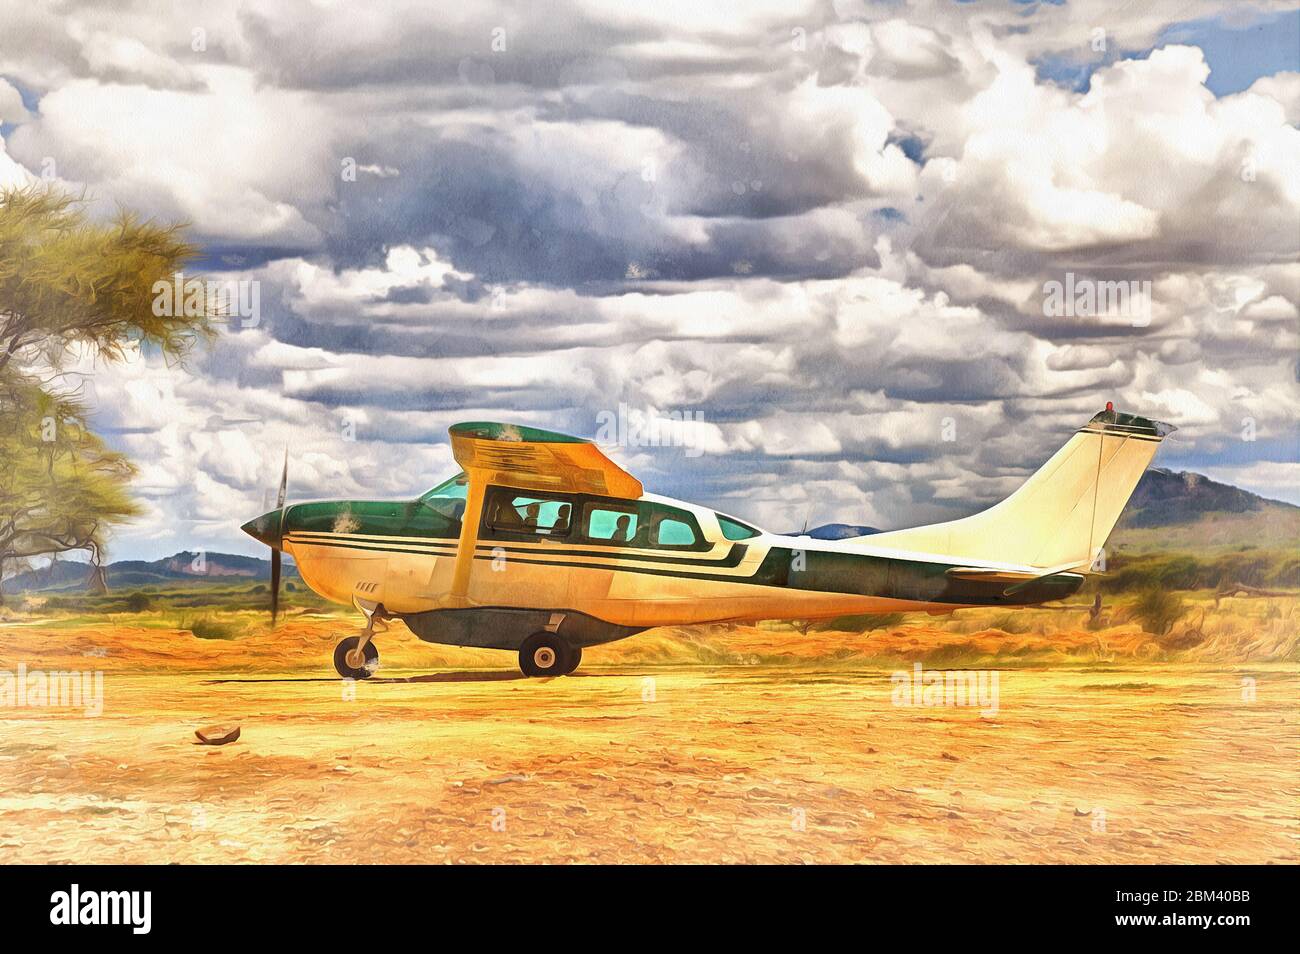 Avion atterrissage à la savane peinture colorée ressemble à l'image, Tanzanie, Afrique de l'est Banque D'Images